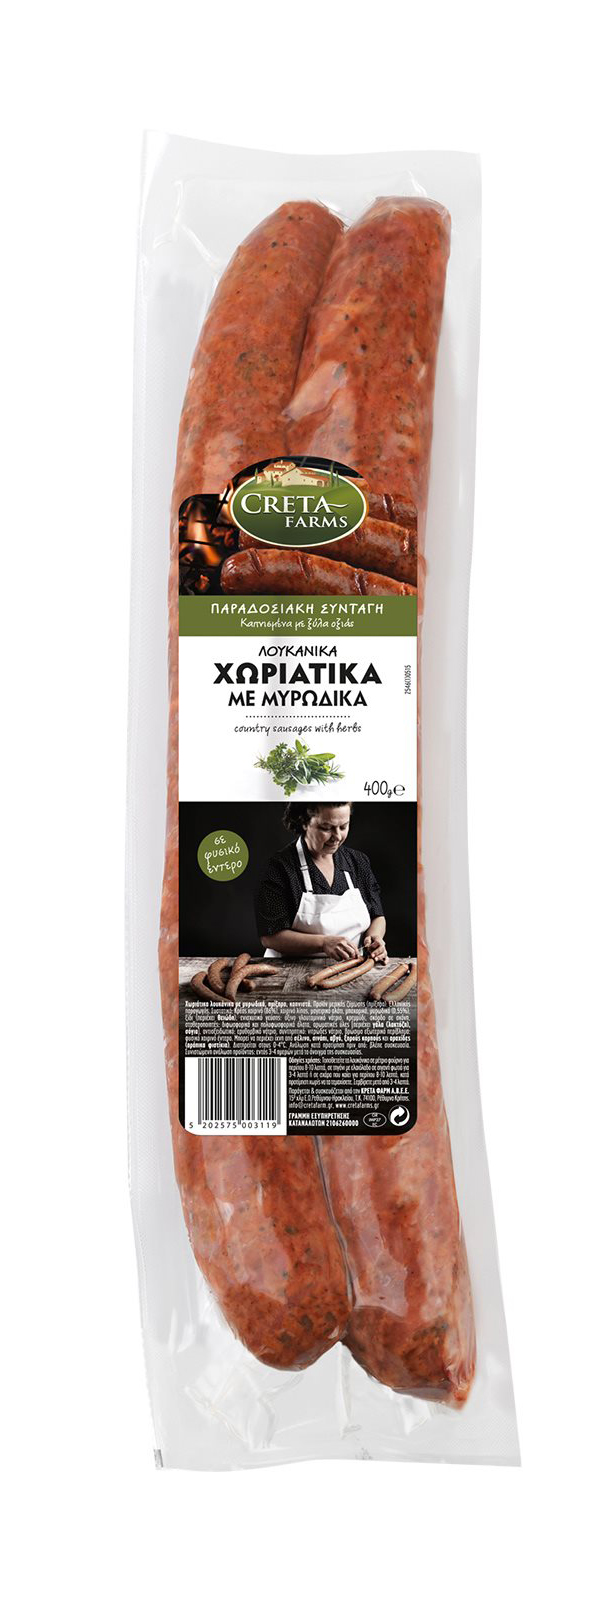 Bauernwurst mit aromatischen Kräutern Creta Farms 400g